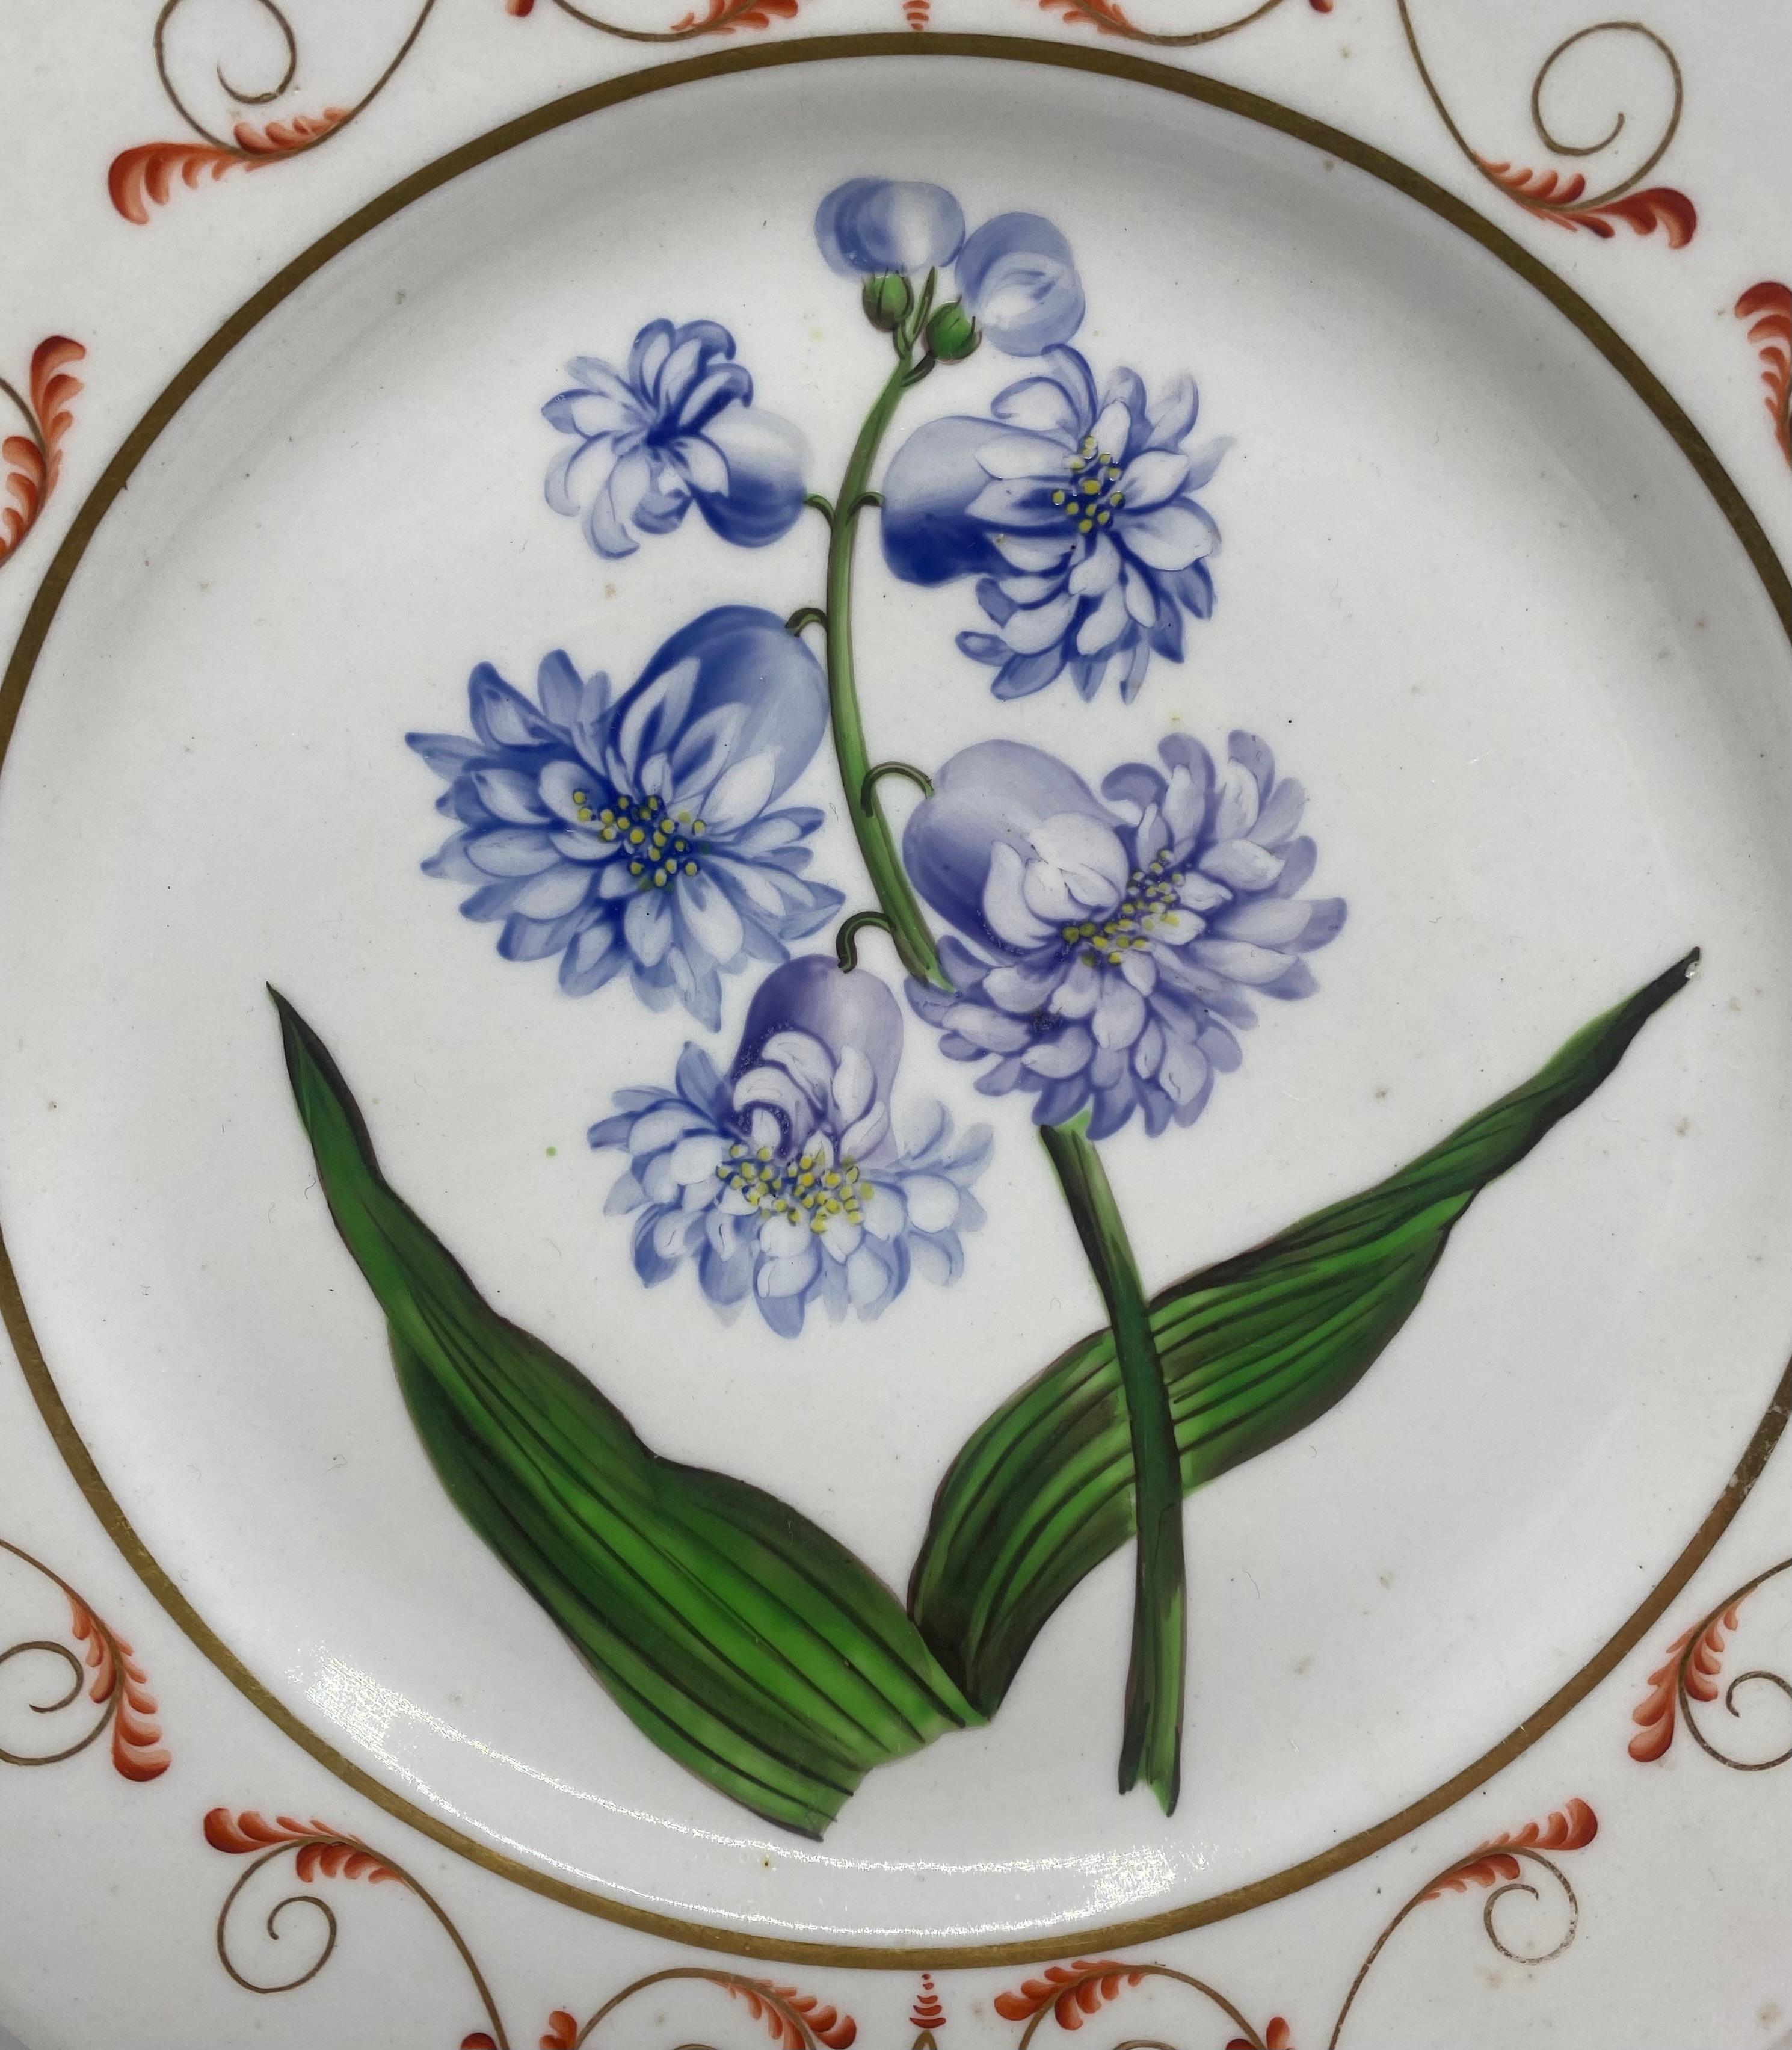 Plat botanique en porcelaine anglaise, 'Hyacinth', C.C. 1800. Peint à la main au centre, avec une étude titrée d'une jacinthe. La bordure est ornée d'un motif stylisé de rinceaux de feuilles classiques, en rouge de fer et doré.
Titré au verso en